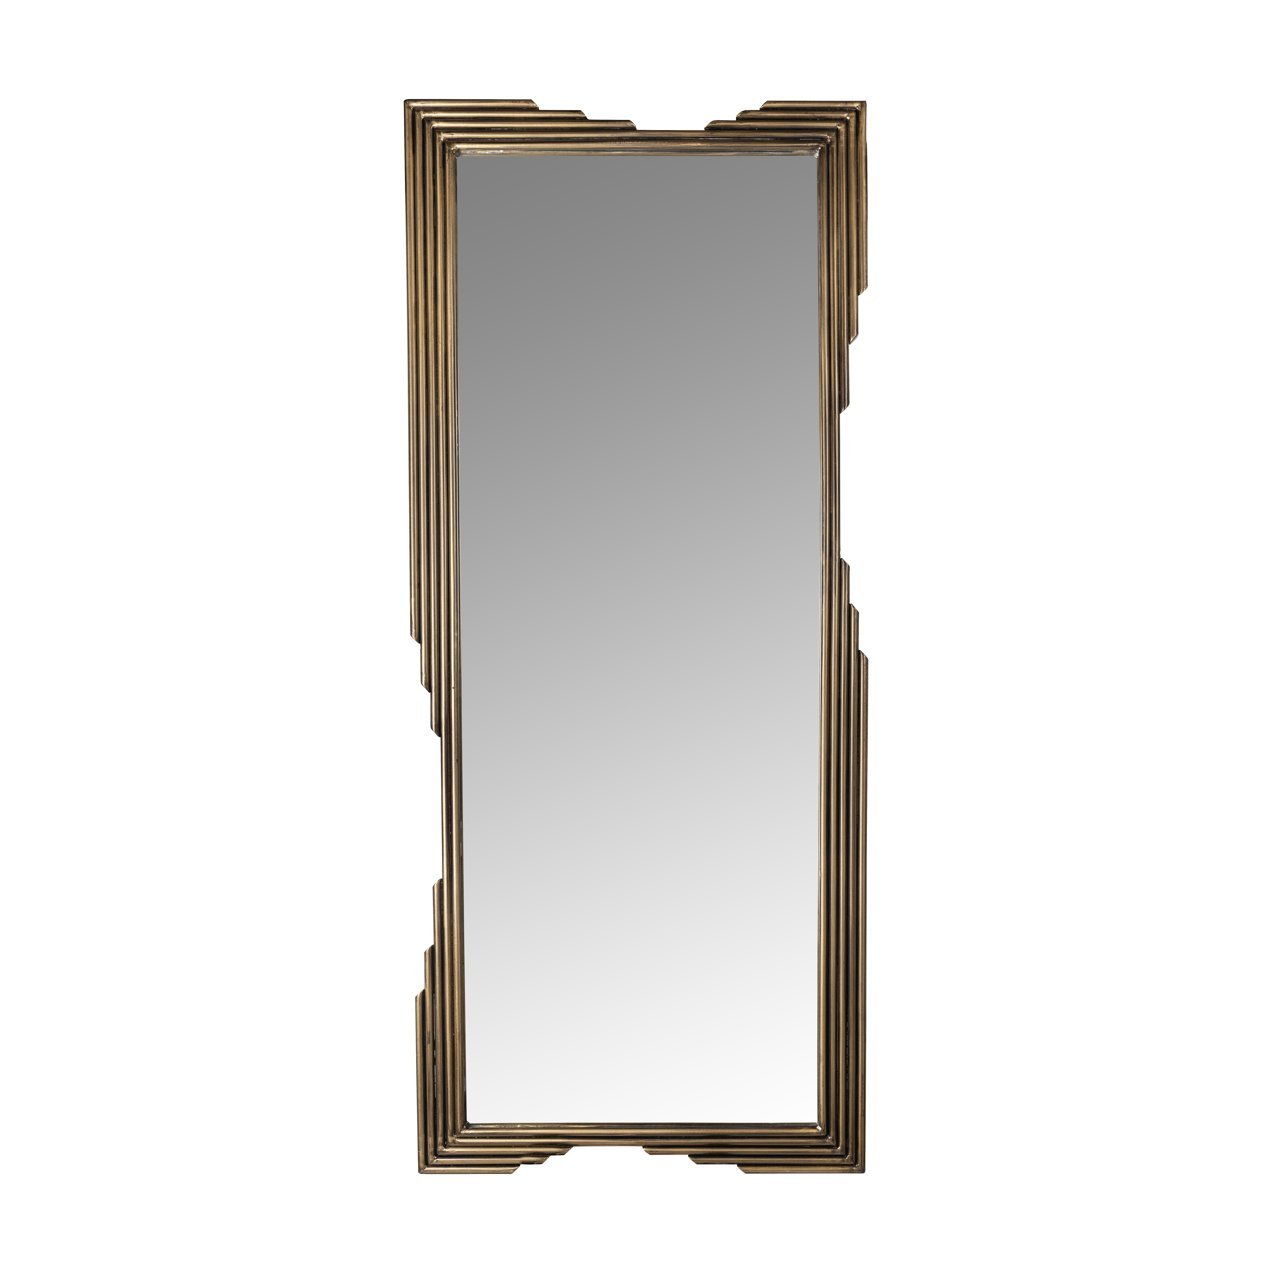 Rechthoekige spiegel van Richmond interiors in antiek gouden metalen lijst